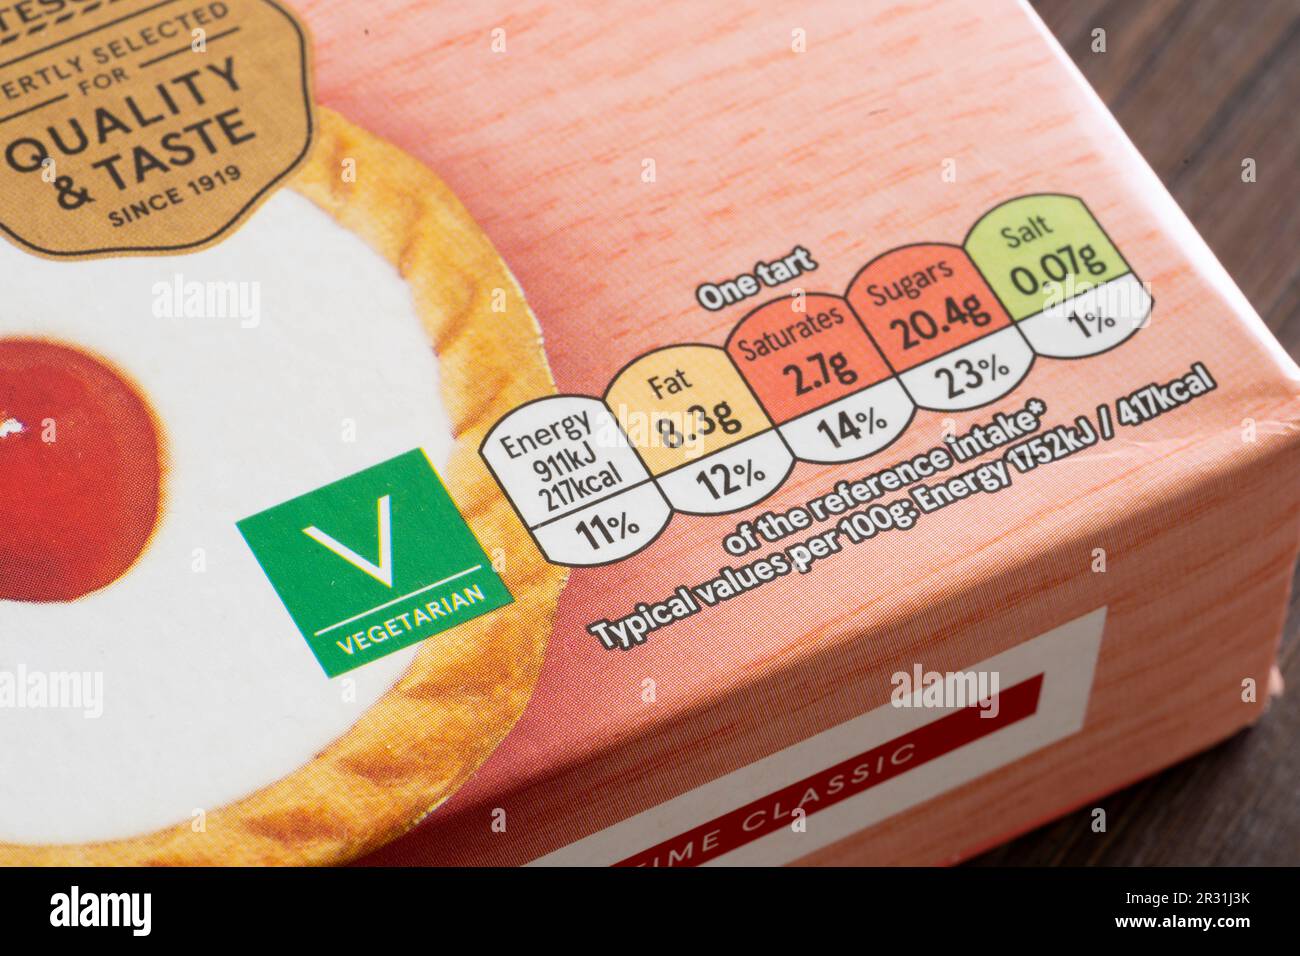 Avant de l'emballage alimentaire et étiquette végétarienne sur les tartes aux cerises de marque Tesco, en Angleterre. Concept: Teneur en sucre des complexes adhésifs nutritionnels Banque D'Images